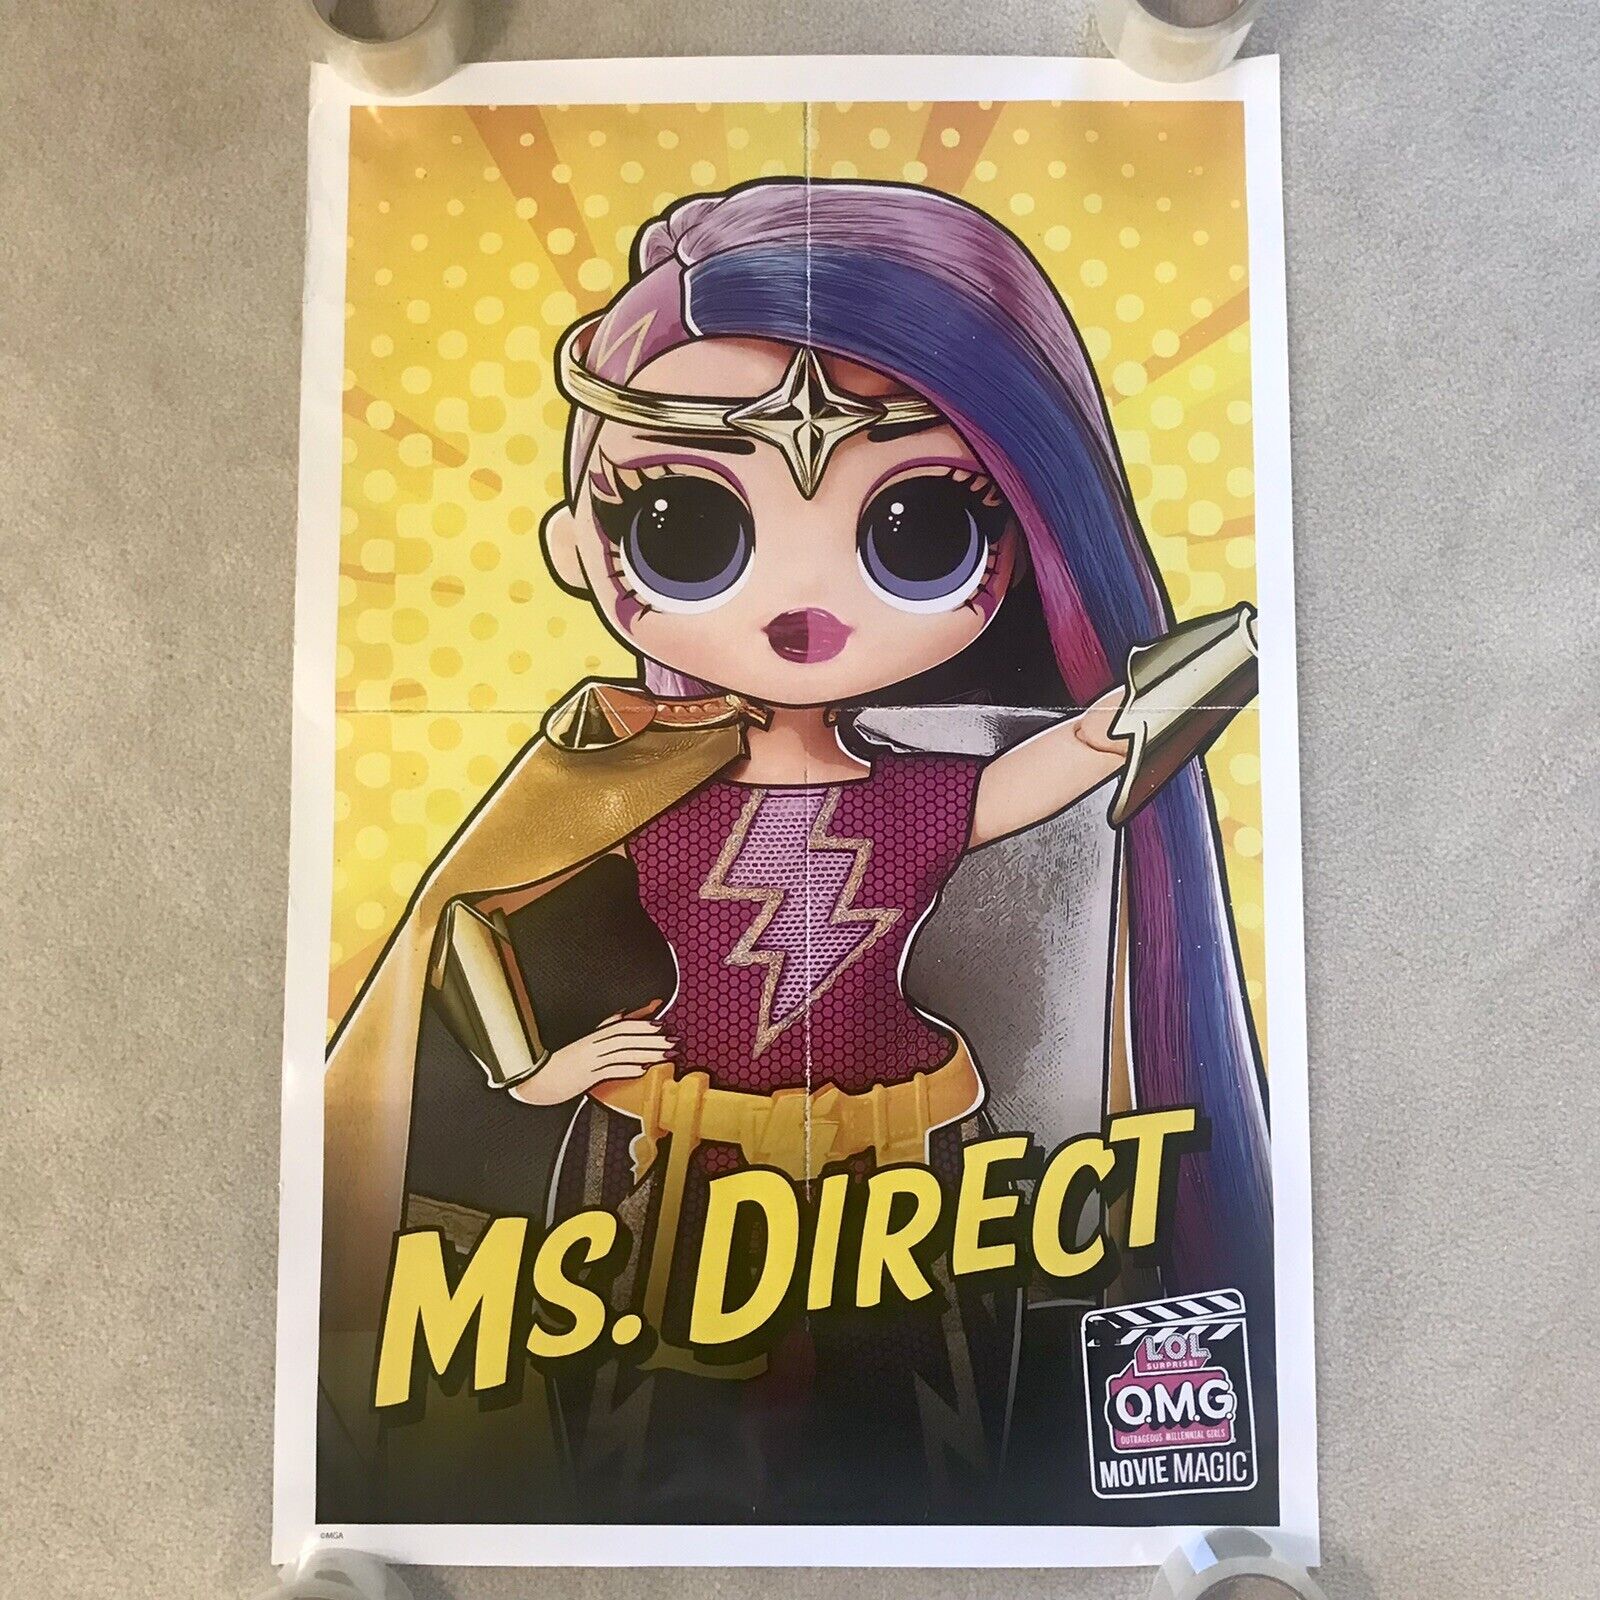 LOL OMG Movie Magic Poster 36” X 24” Ms. Direct PROMO STORE DISPLAY MGA RARE